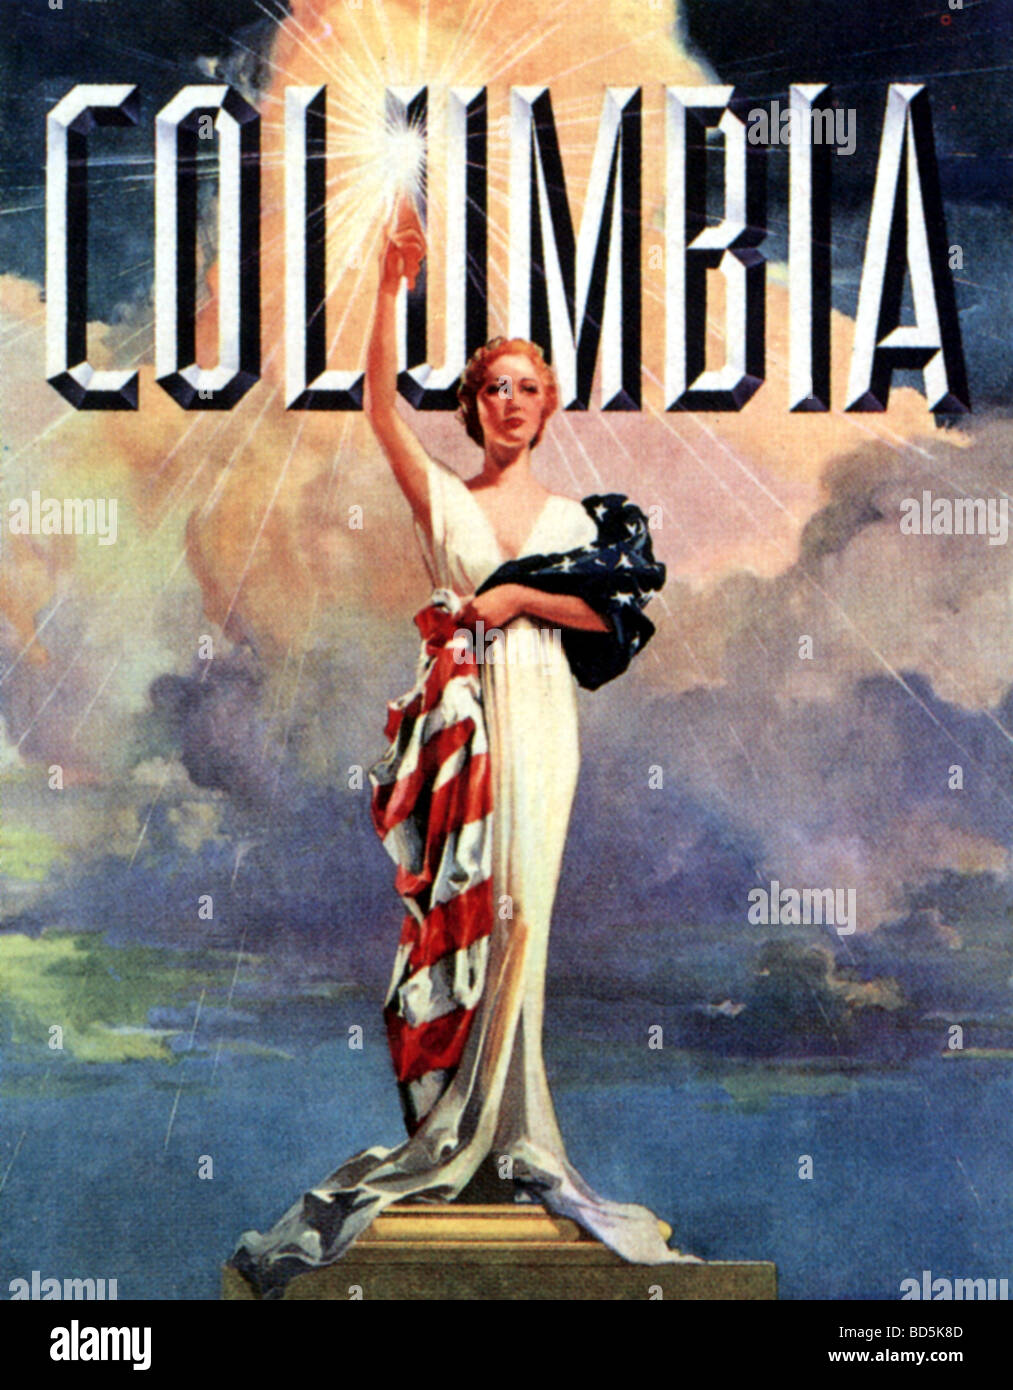 COLUMBIA - attrice Evelyn Venable (1913-1993) era il modello originale per la famosa immagine del titolo Foto Stock